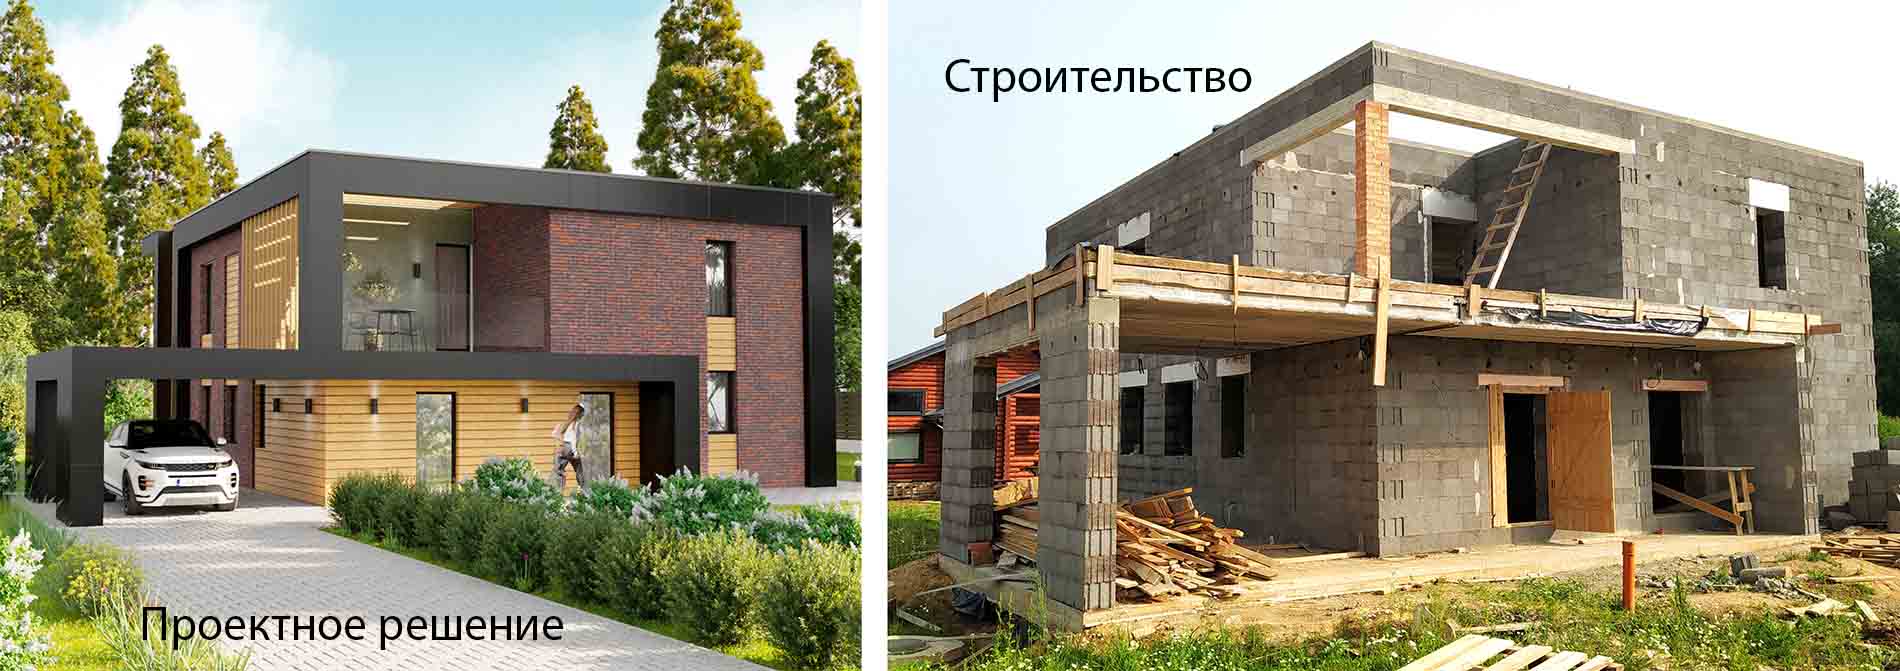 фото строительства двухэтажного дома по проекту 960 вид сбоку